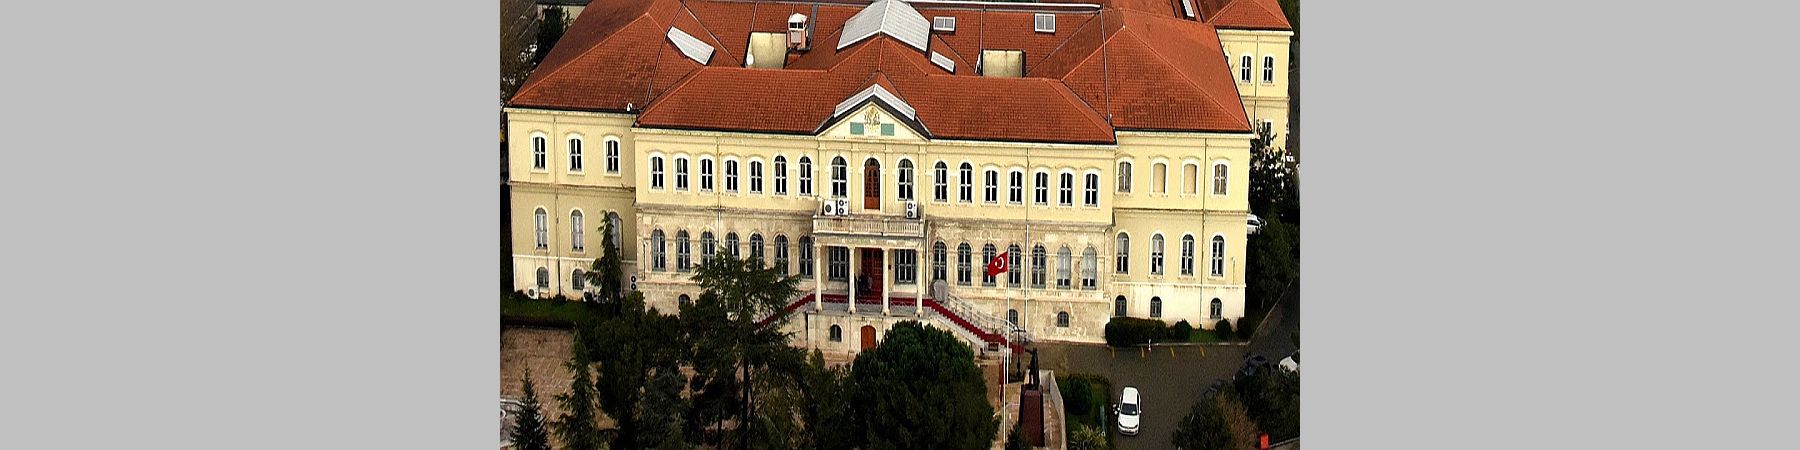 İstanbul Harbiye Askeri Müzesi, İmbat'ın Hassas İklimlendirme Çözümlerini Tercih Ediyor